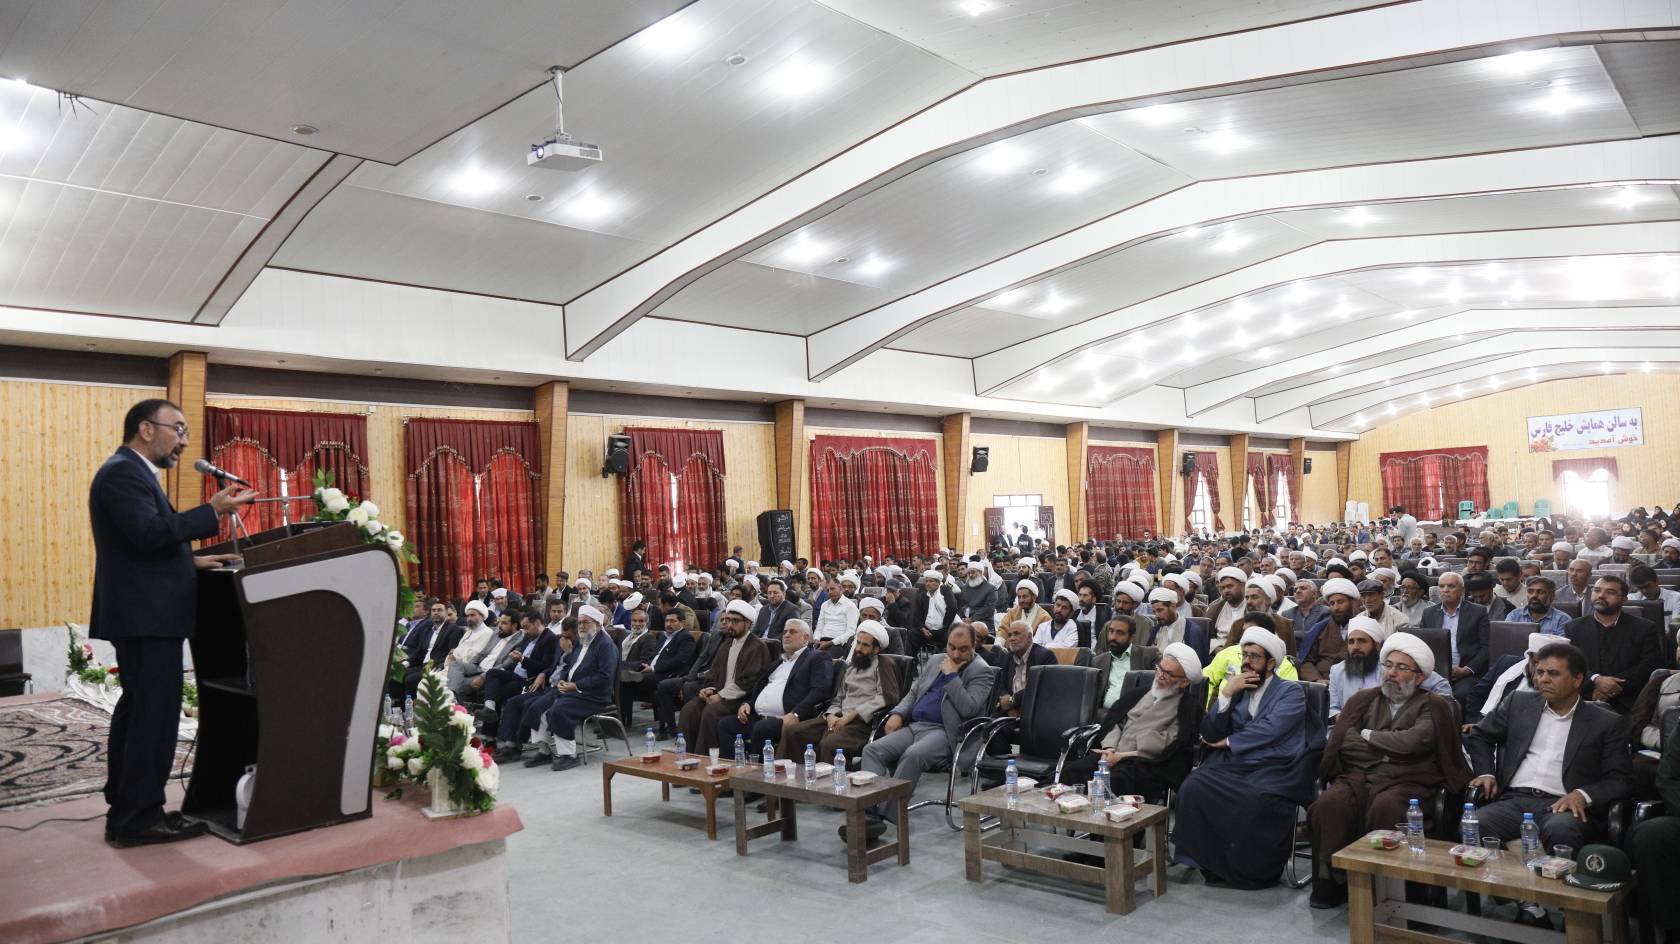 برگزاری همایش بزرگ امت رسول الله در شهرستان تایباد